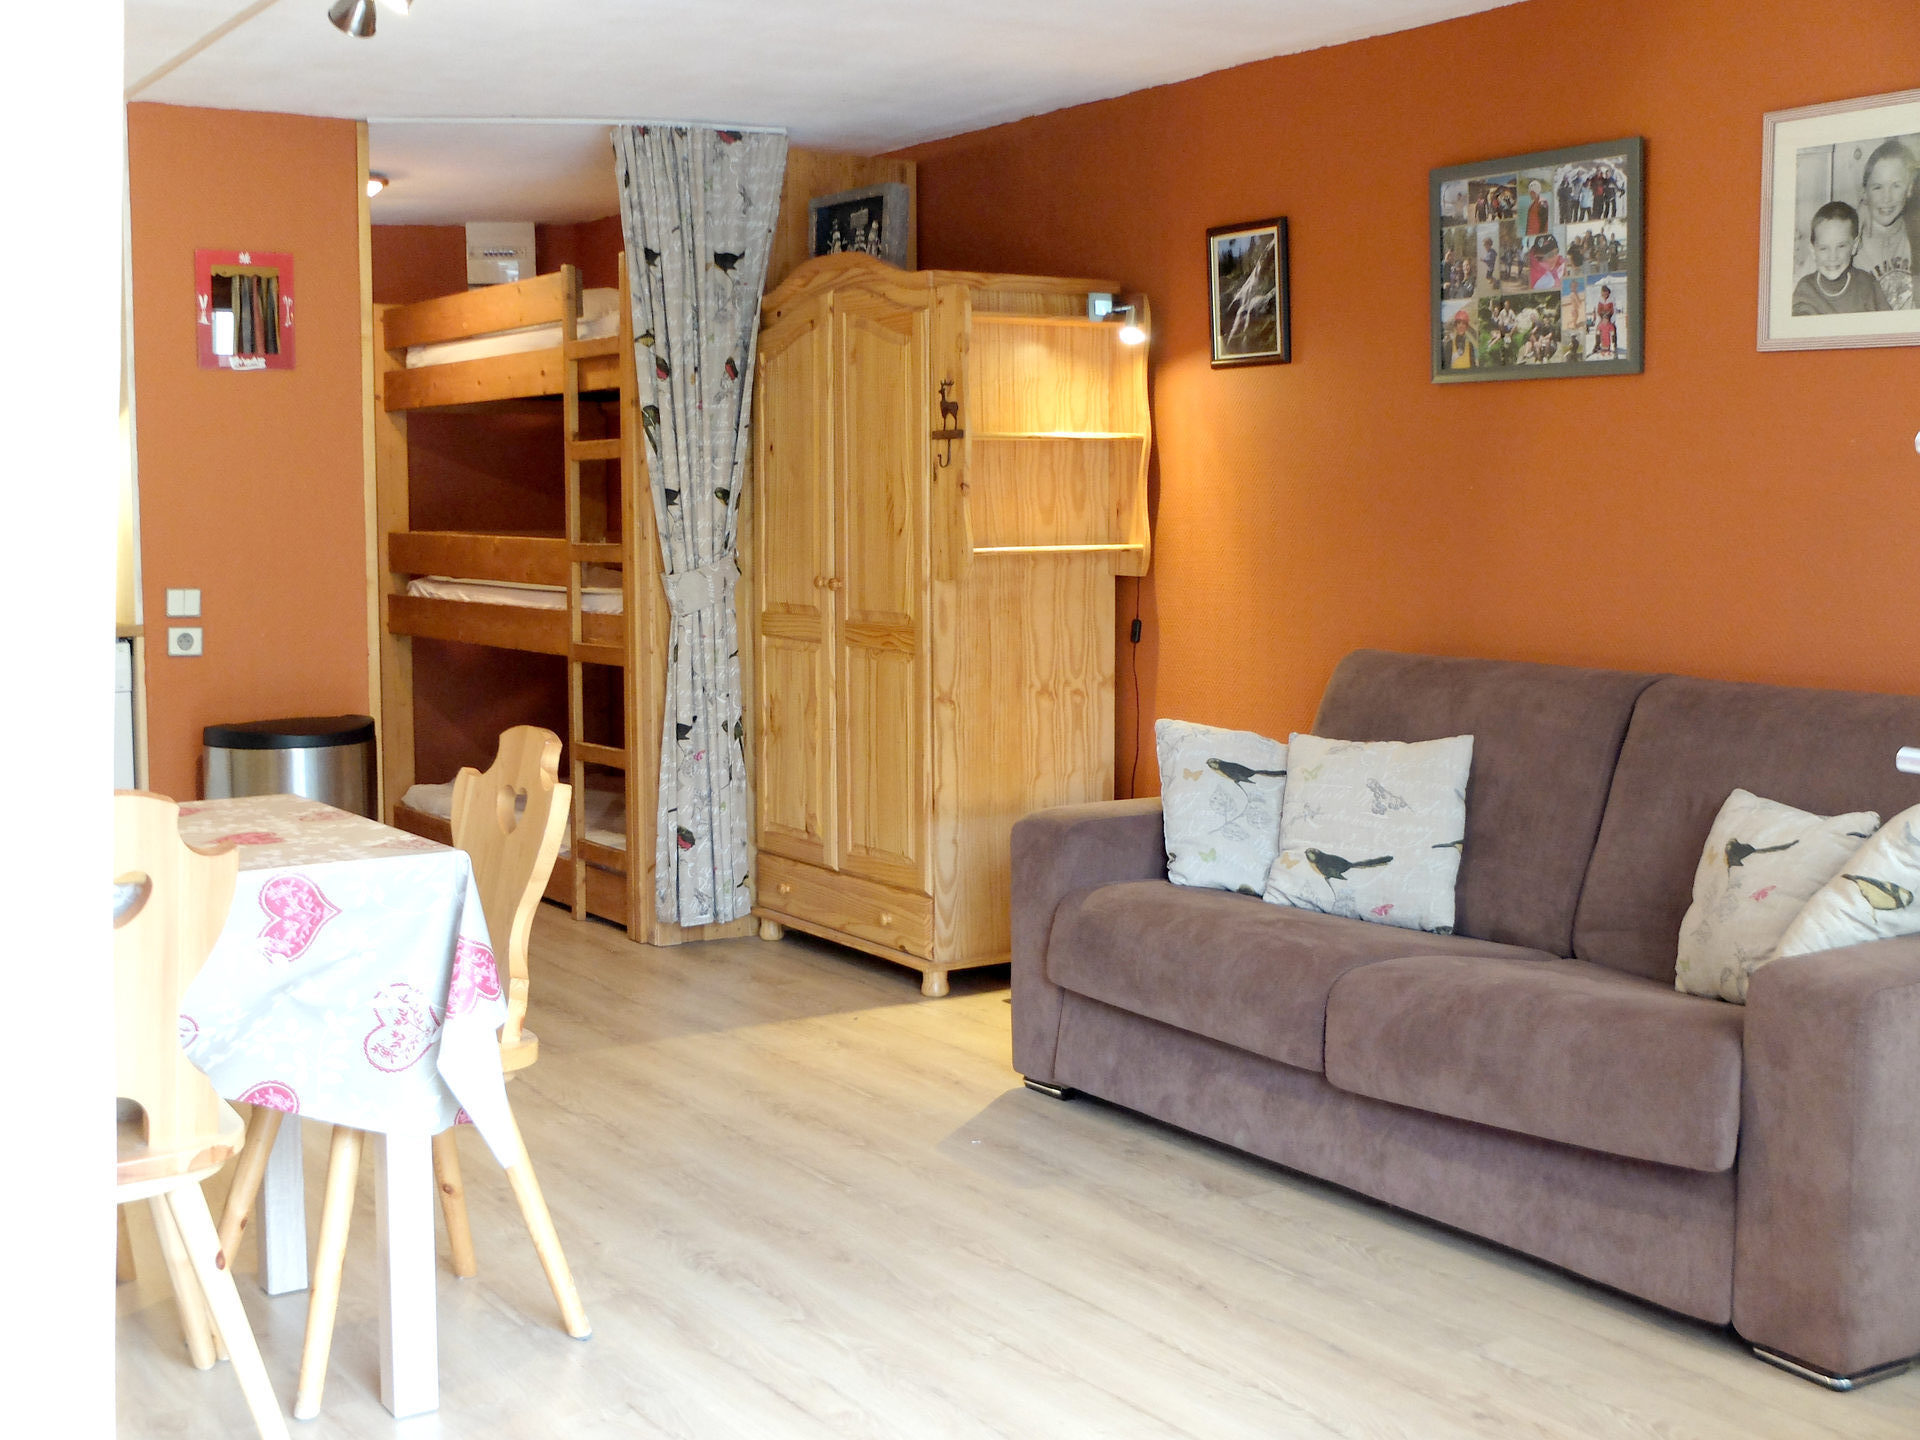 Studio 4 people - travelski home choice - Apartements PALAFOUR - Tignes 2100 Le Lac